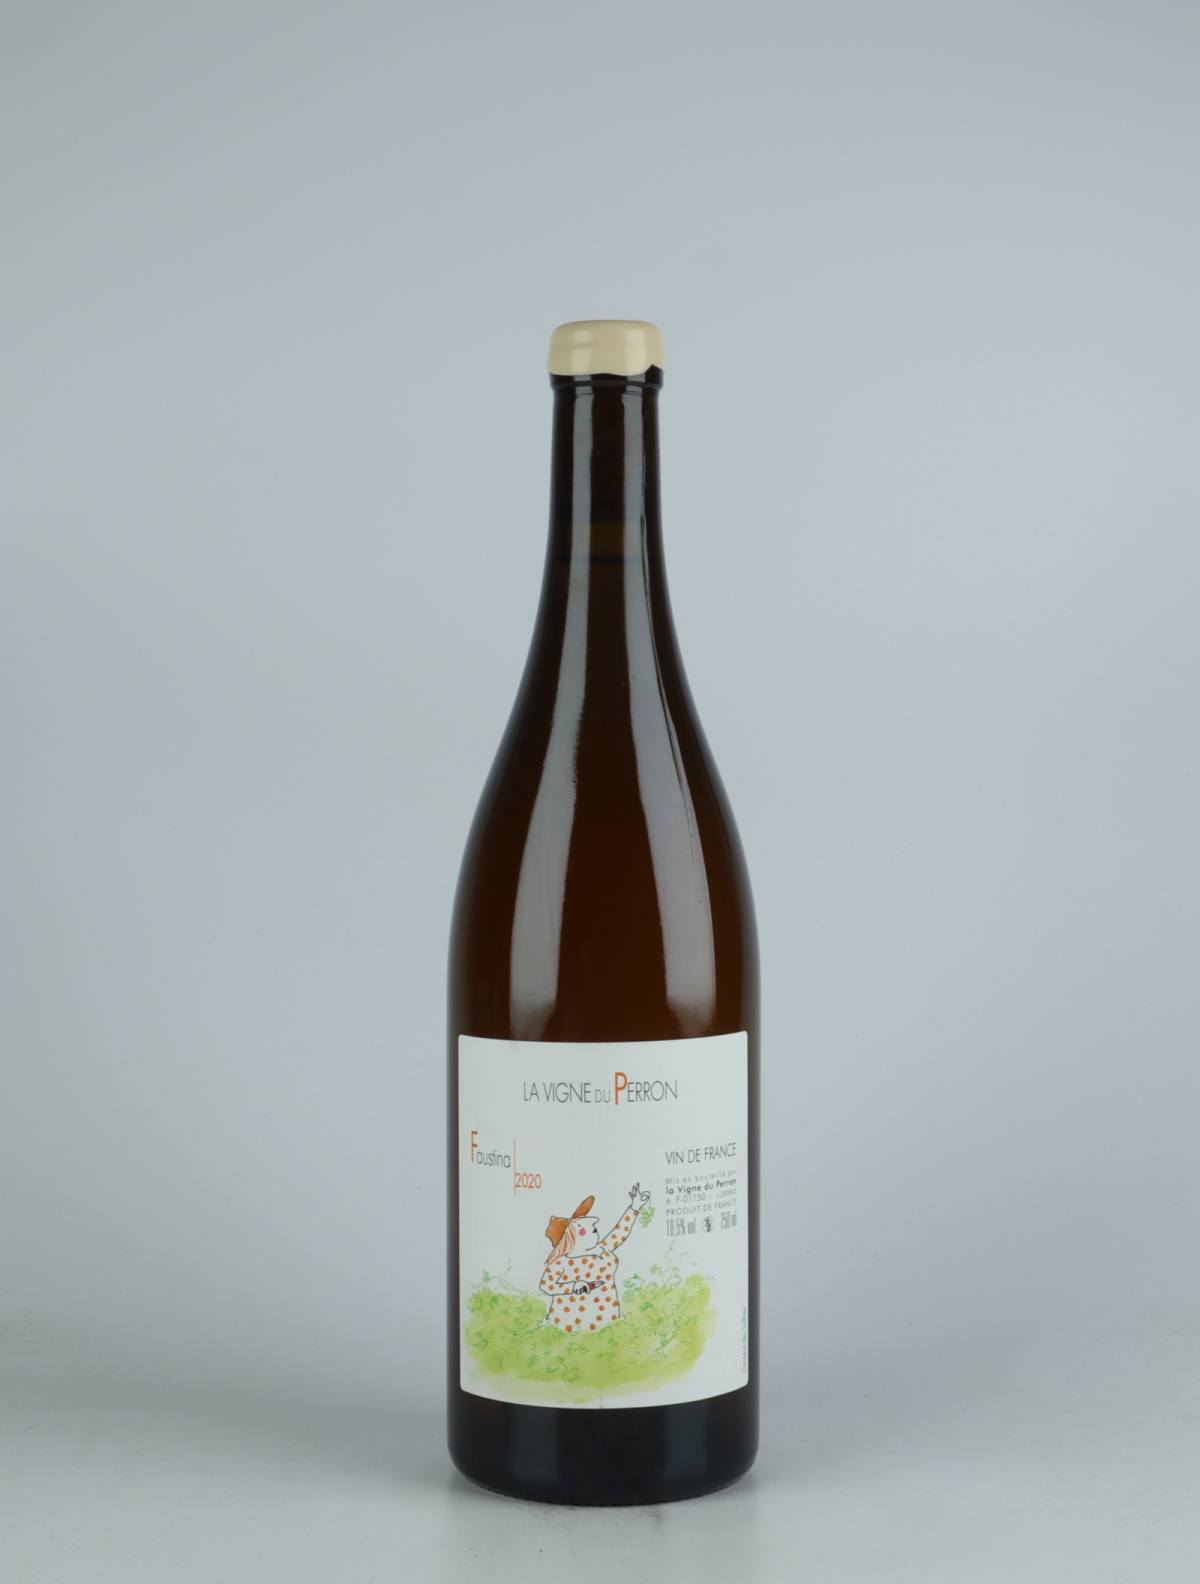 En flaske 2020 Faustina Orange vin fra Domaine du Perron, Bugey i Frankrig